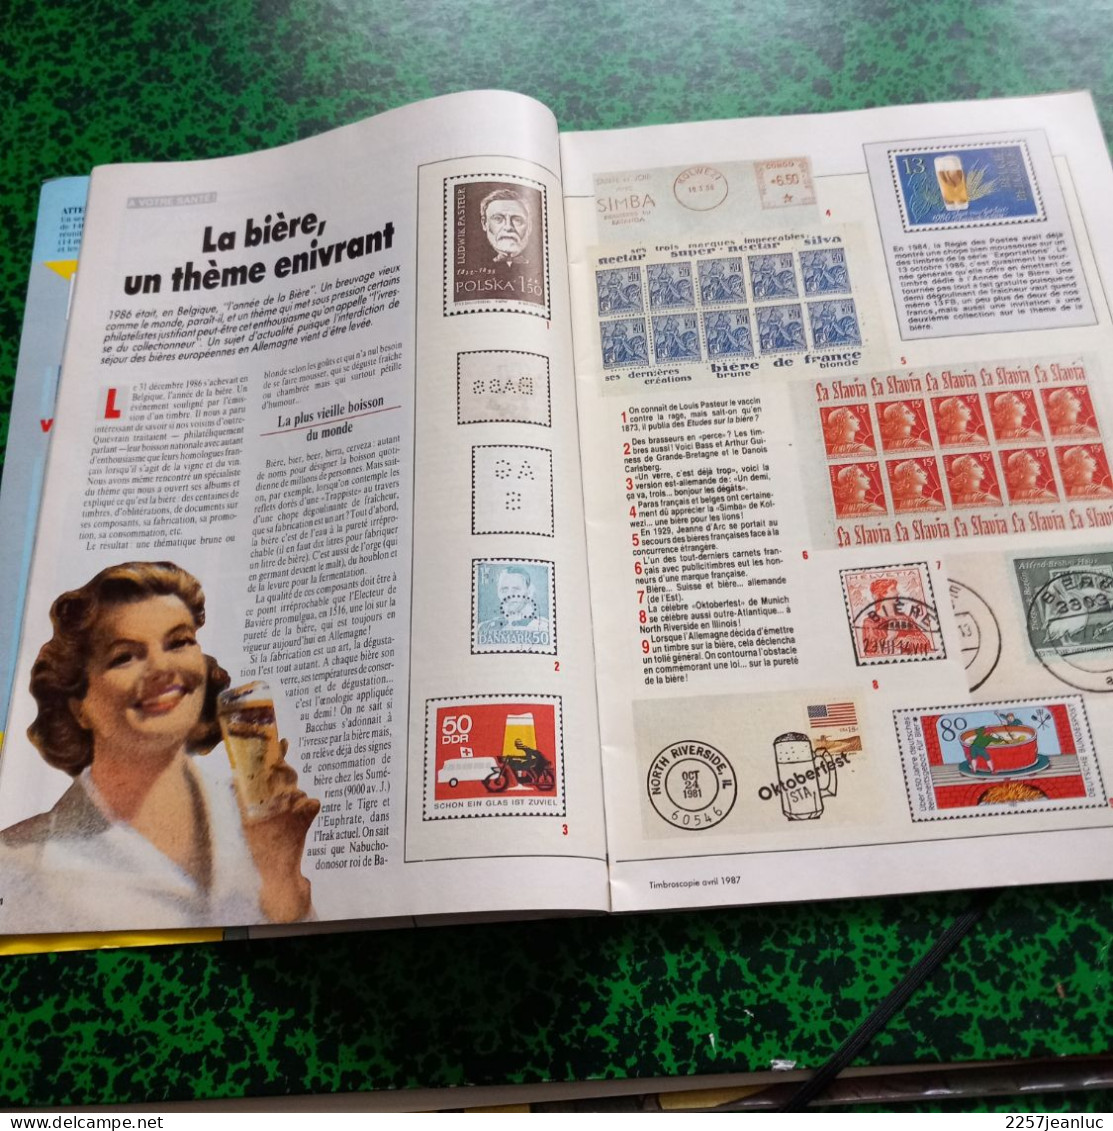 Magazine De La Philatélie * Timbroscopie N: 35 De Avril 1987 * - Francés (desde 1941)